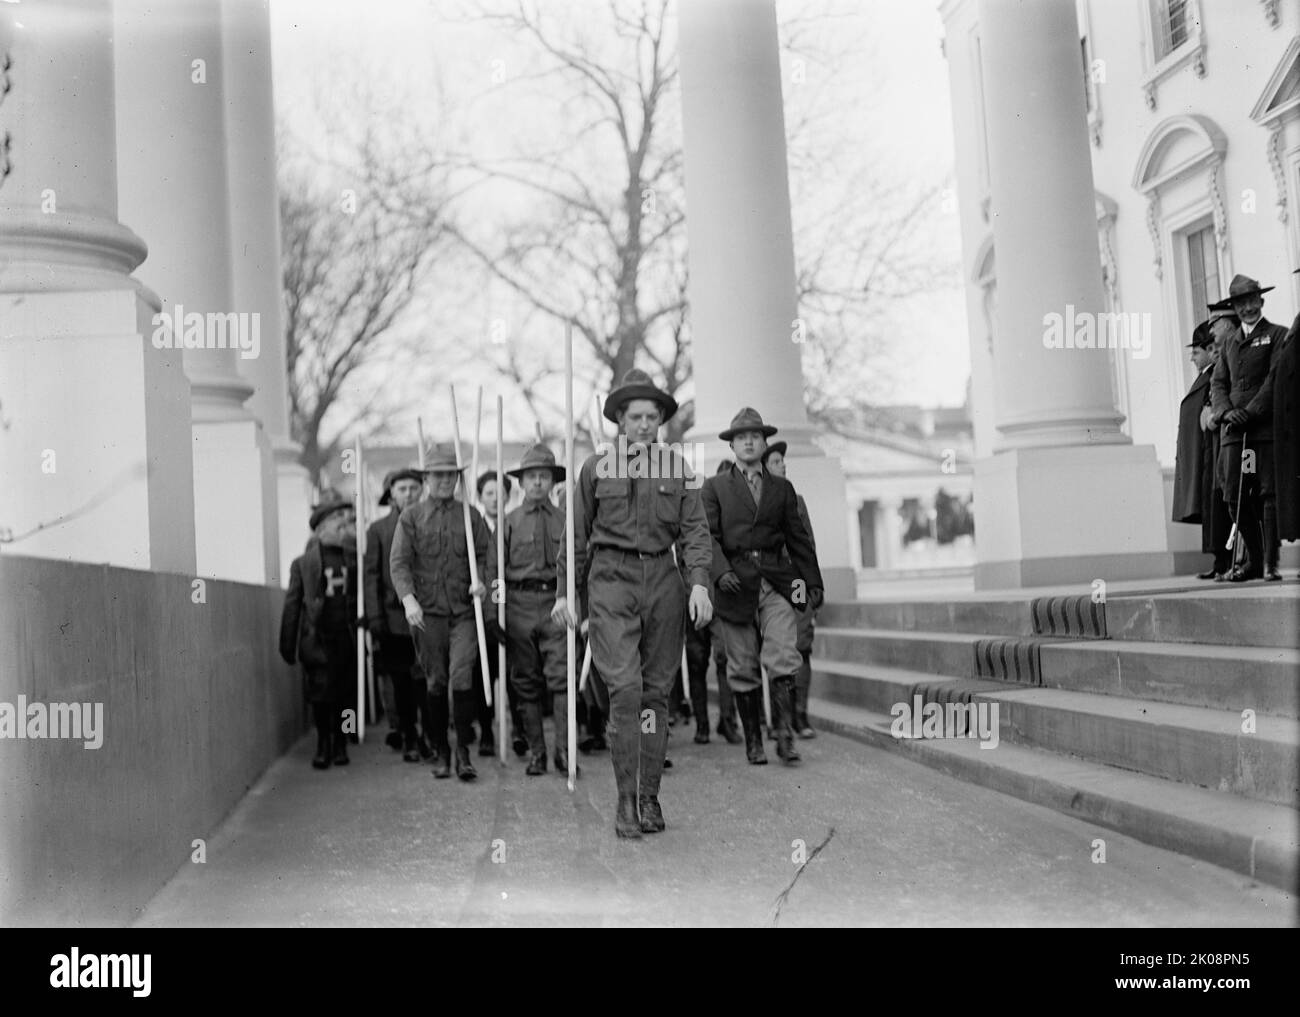 Scouts garçons - visite de Sir Robert Baden-Powell à D.C. Parade de de revue de la Maison Blanche Portico, 1911. Banque D'Images